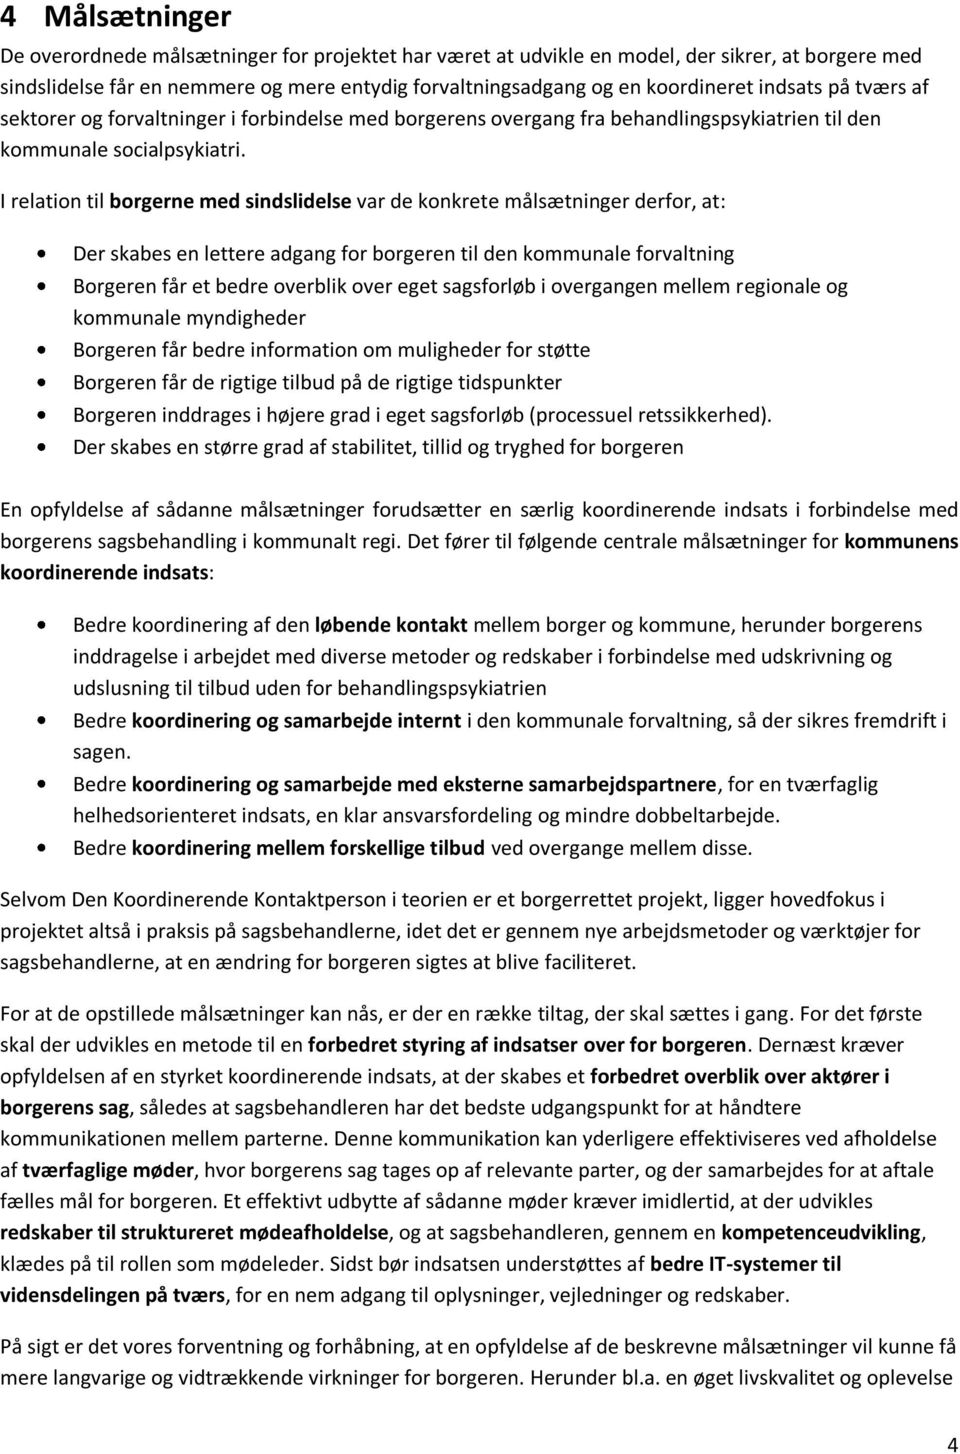 DEN KOORDINERENDE KONTAKTPERSON KØBENHAVNS KOMMUNE - PDF Free Download